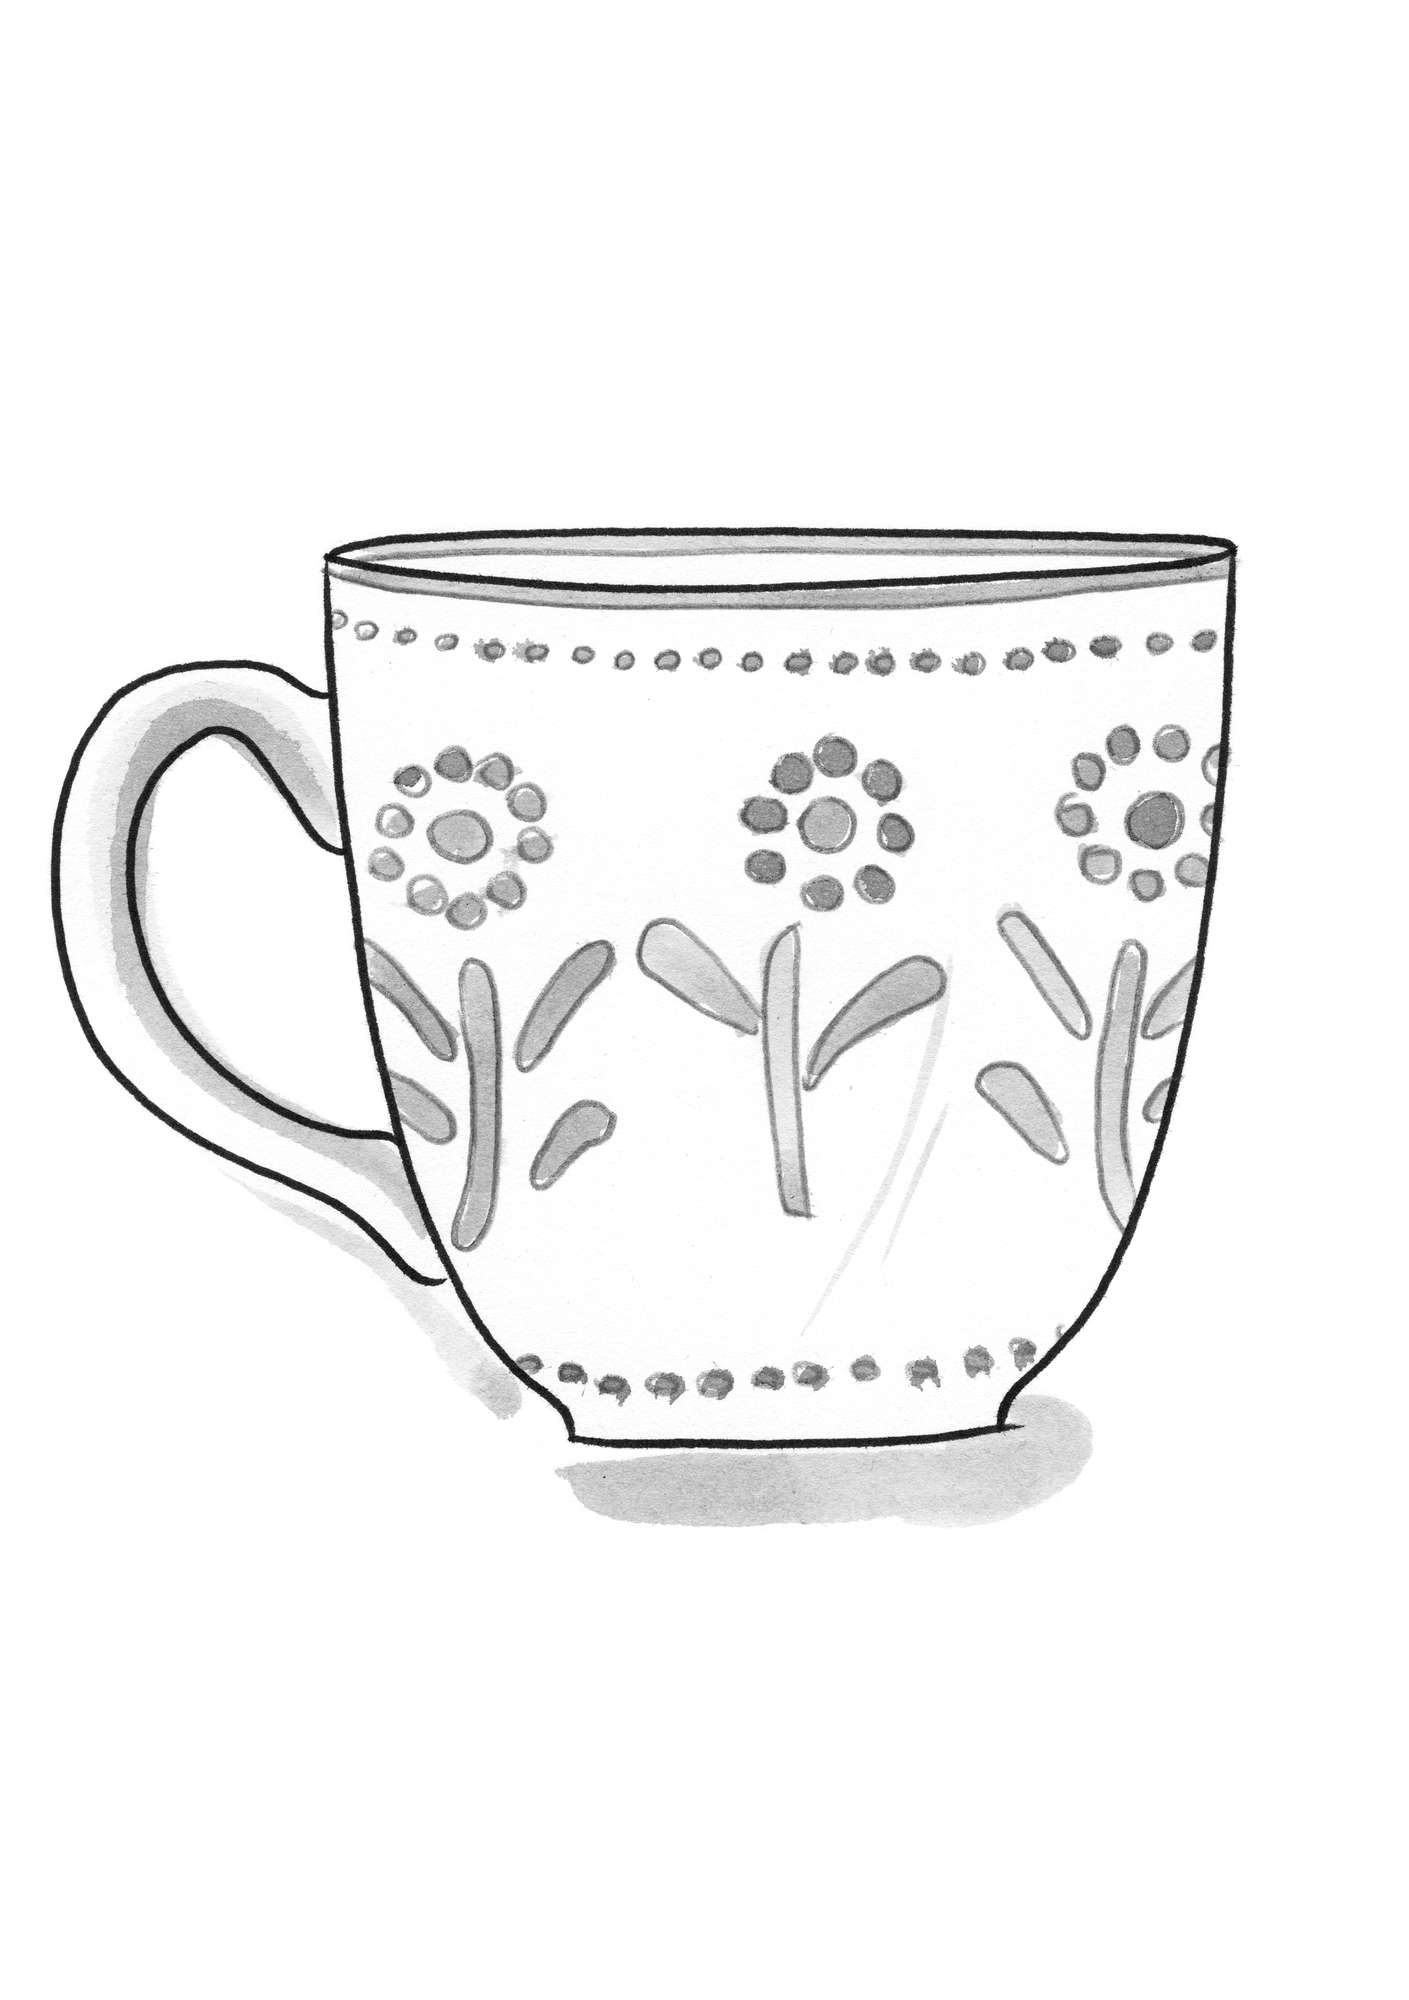 “Chai” ceramic teacup